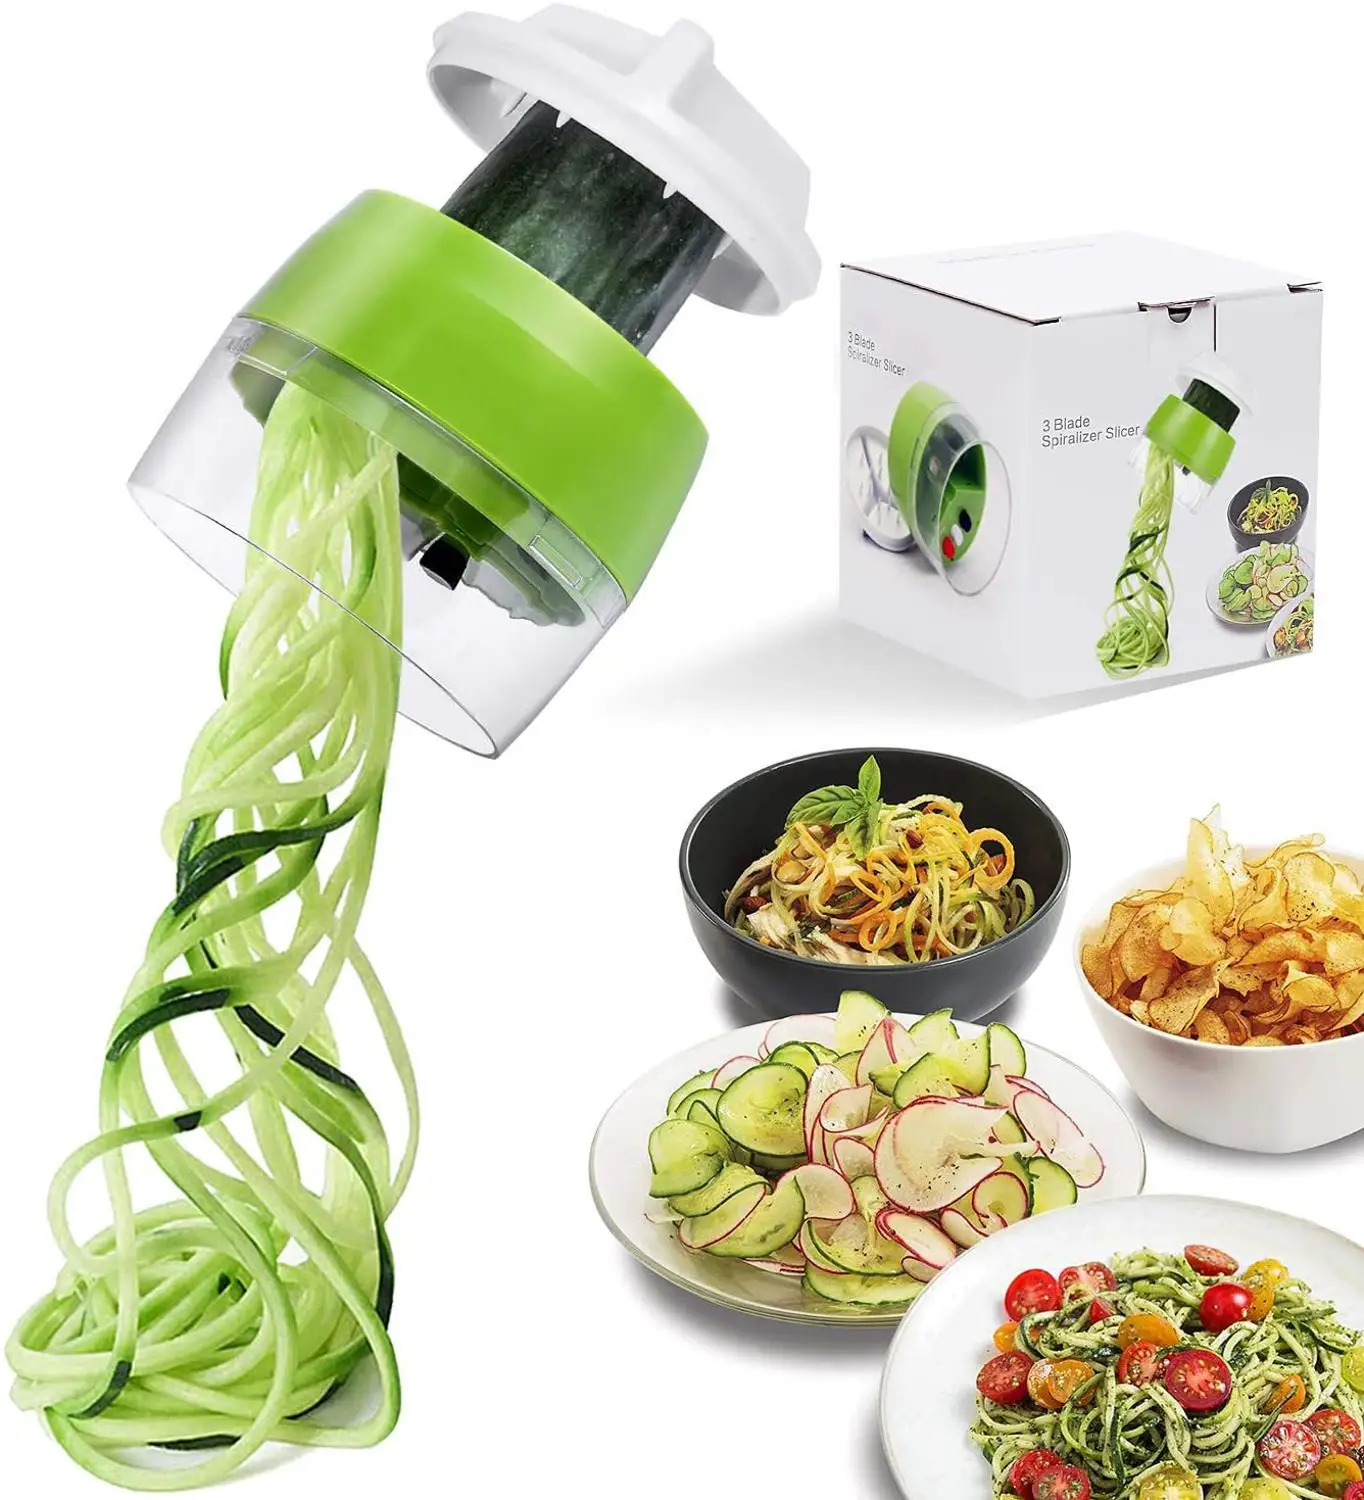 

Handheld Spiralizer Vegetable Fruit Slicer 4 In 1 Adjustable Spiral Grater Cutter Salad Tools Zucchini kitchen gadgets